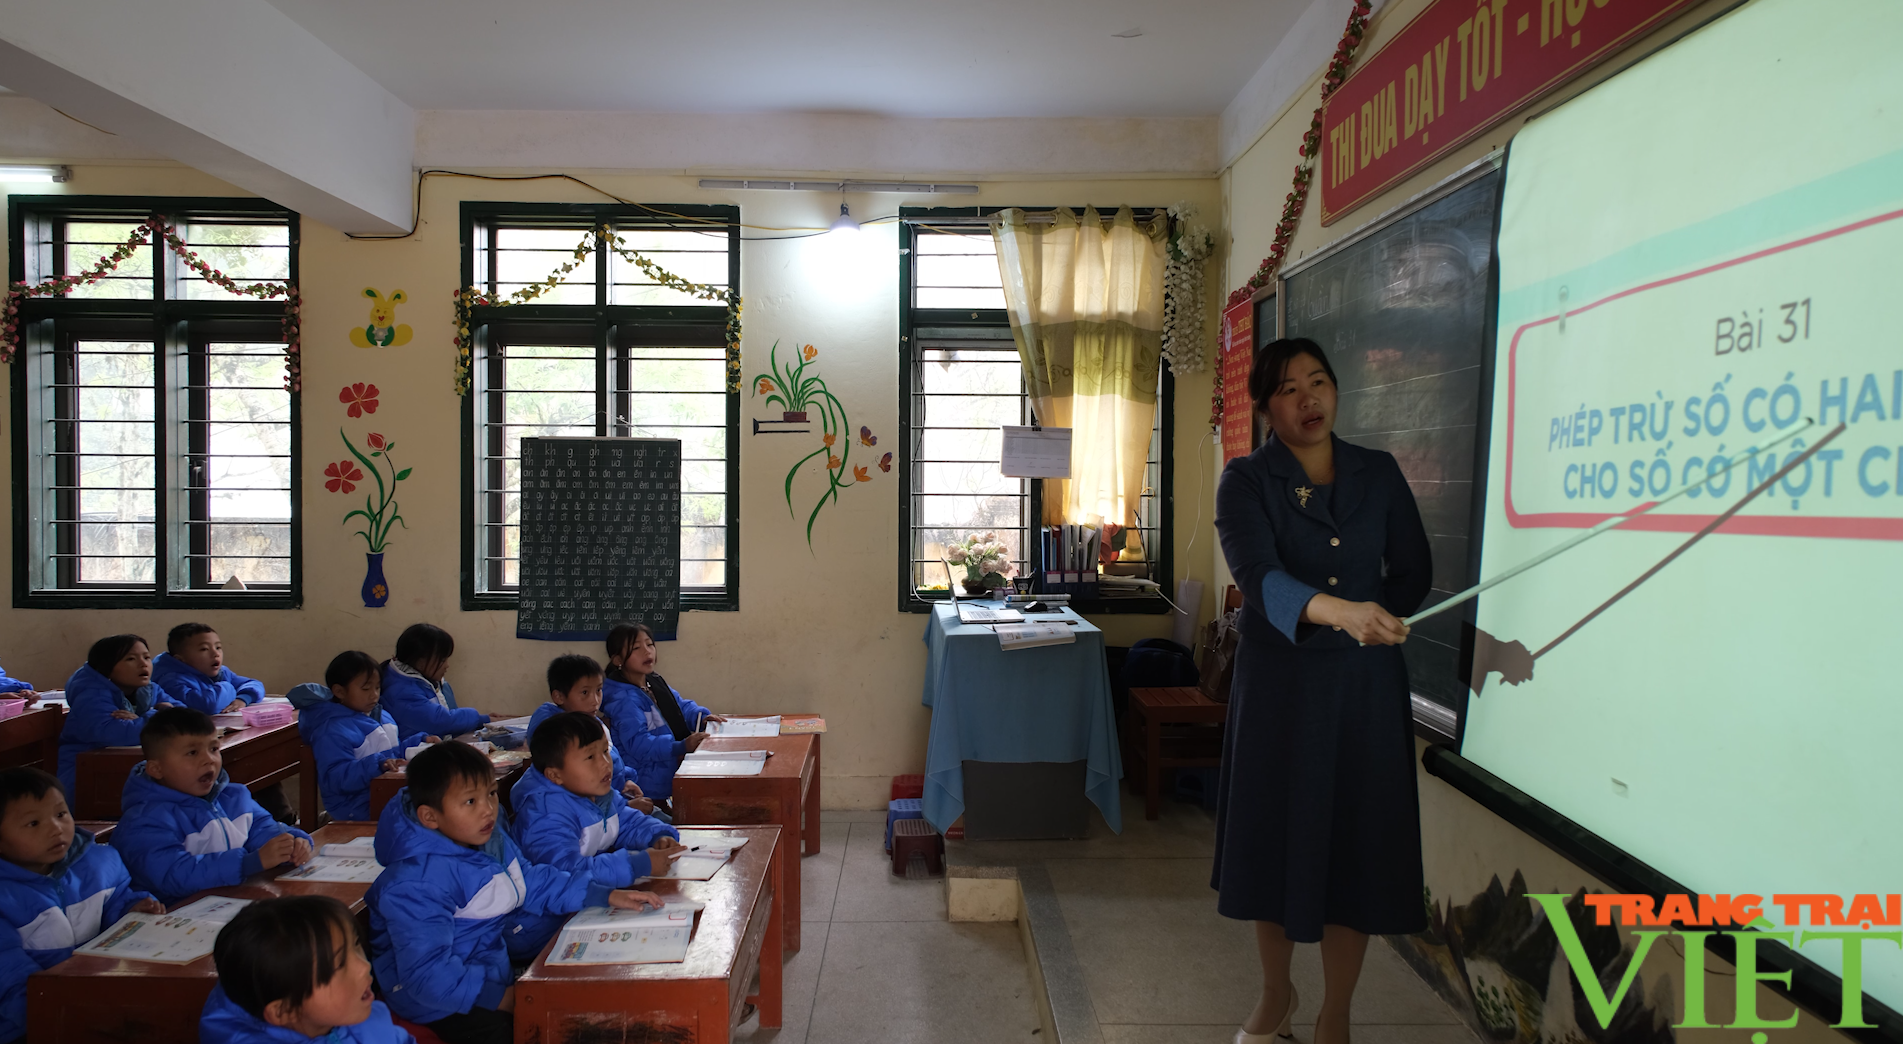 Chuyển đổi số ở trường vùng cao Tả Ngảo của Lai Châu, thầy cô nhàn việc giảng, học sinh ngày một tiến bộ- Ảnh 1.